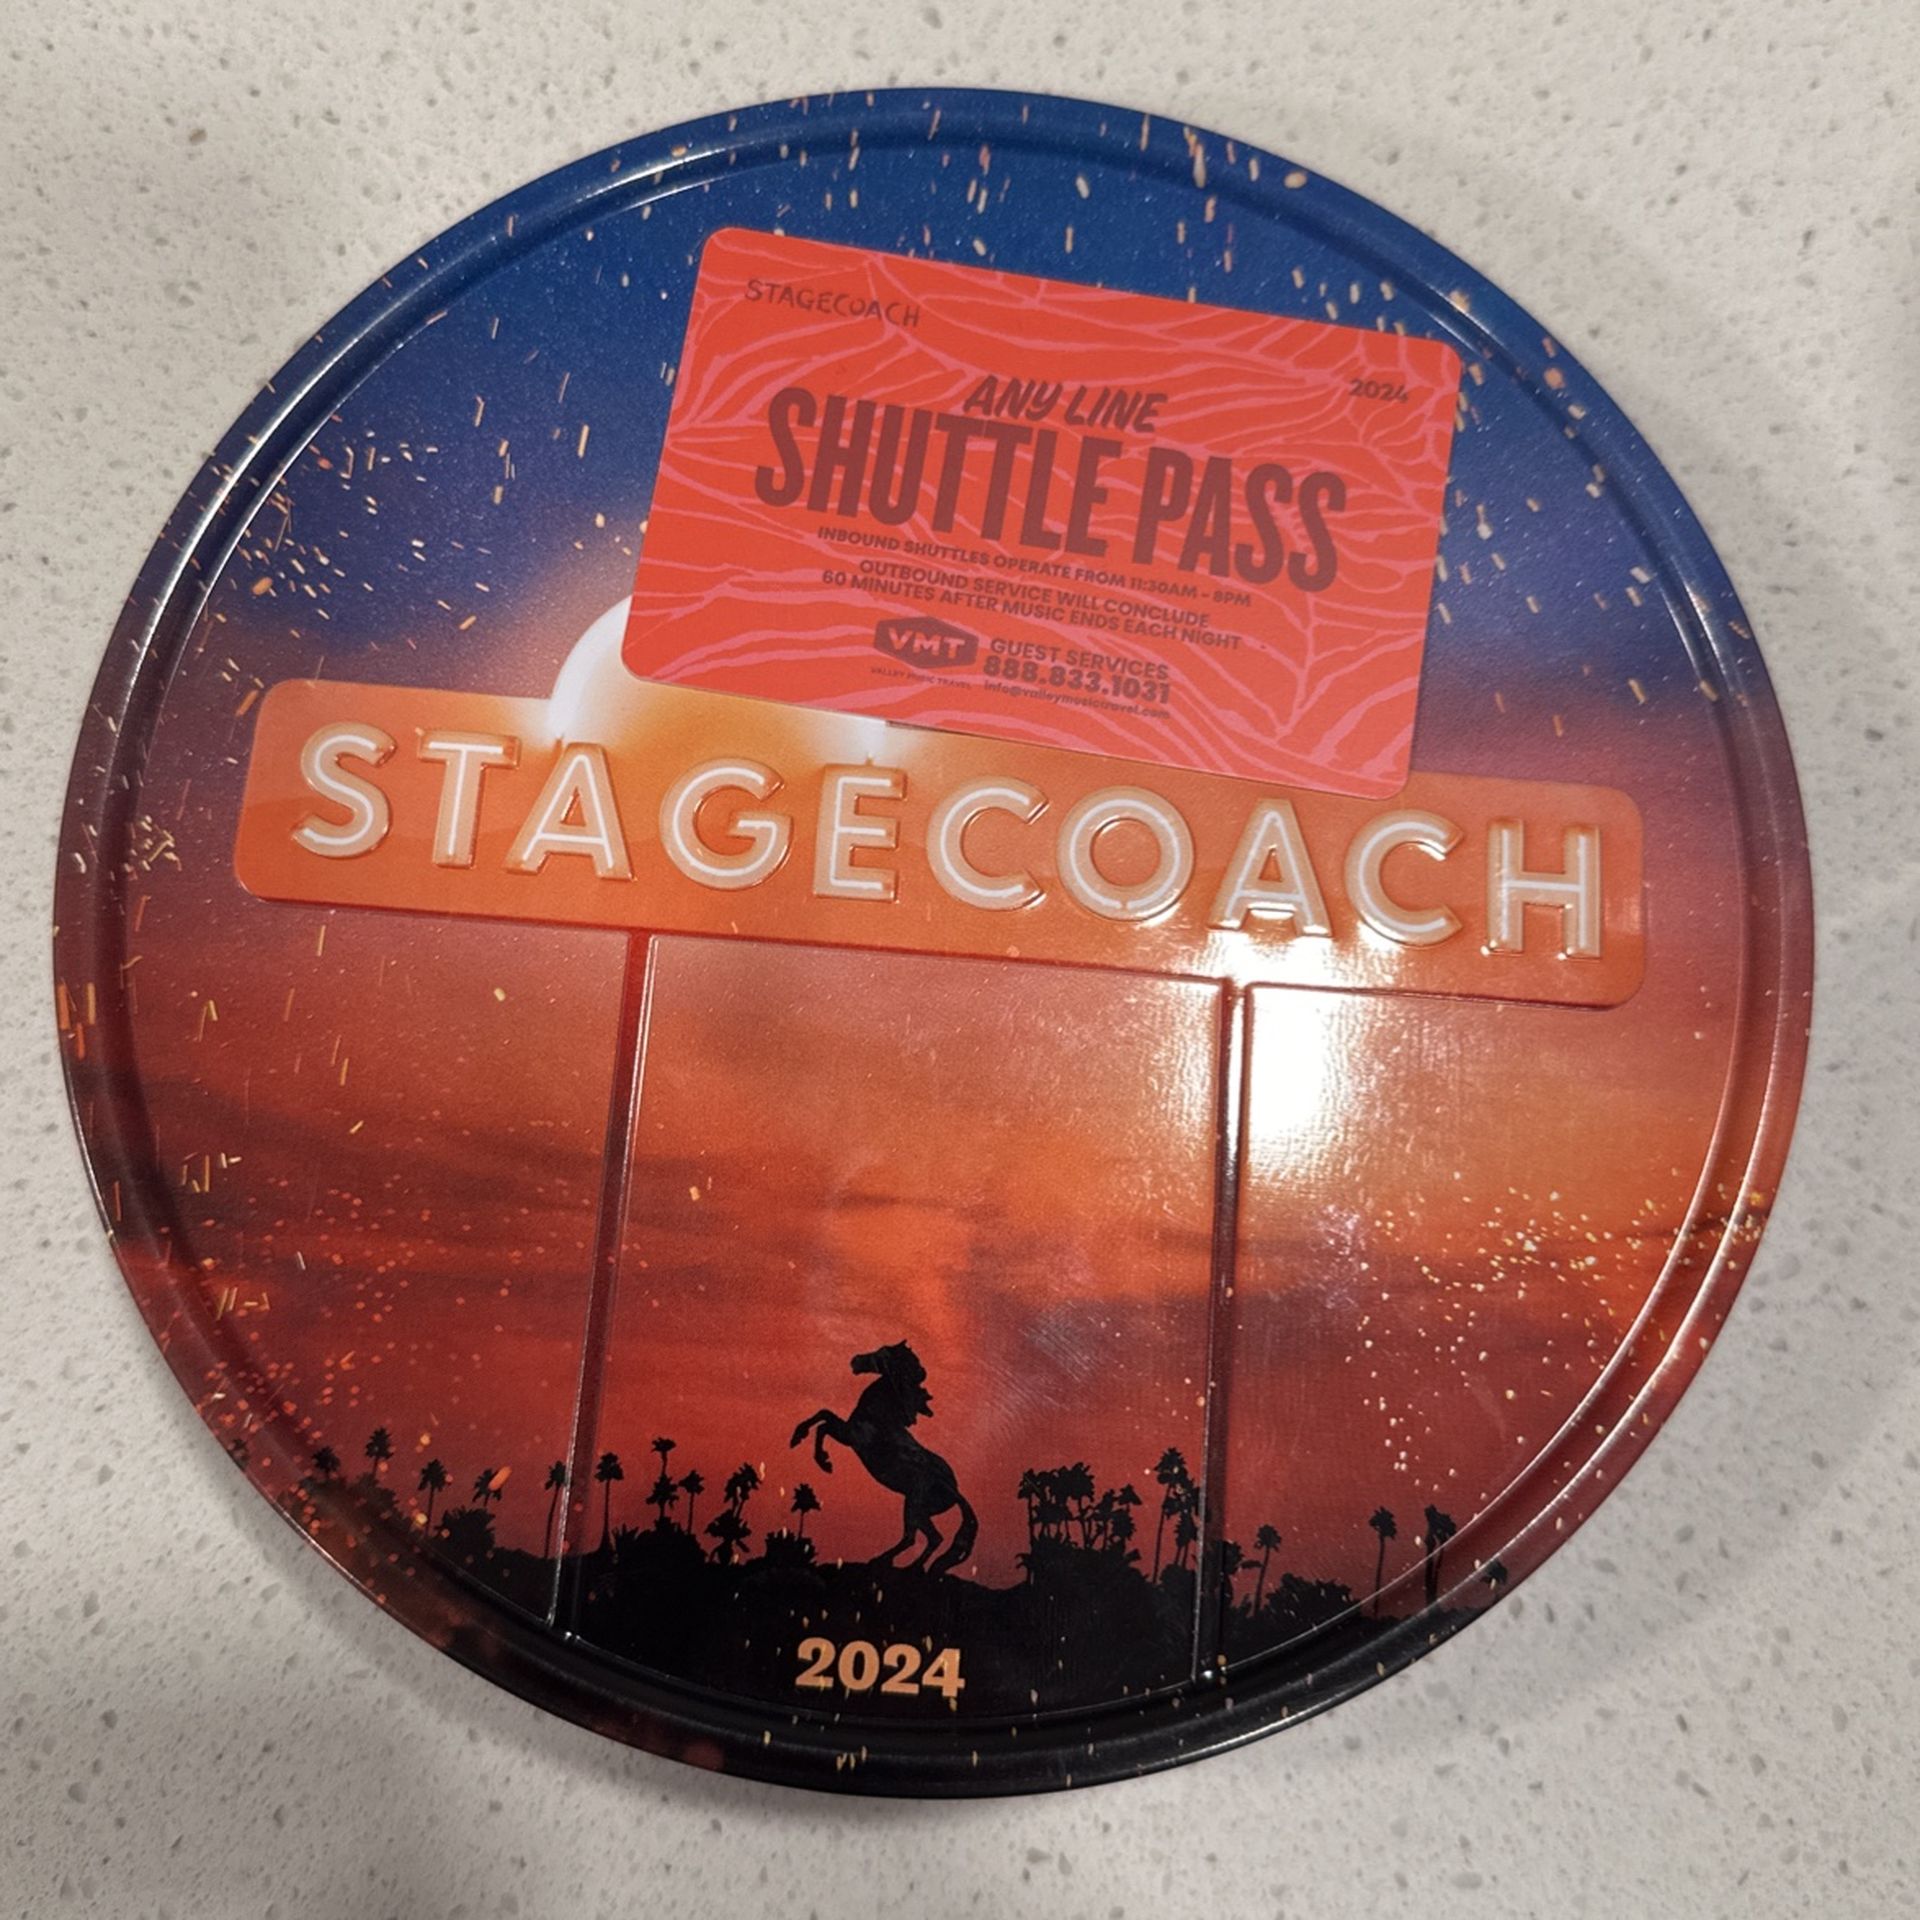 Stagecoach  Shuttle Pass